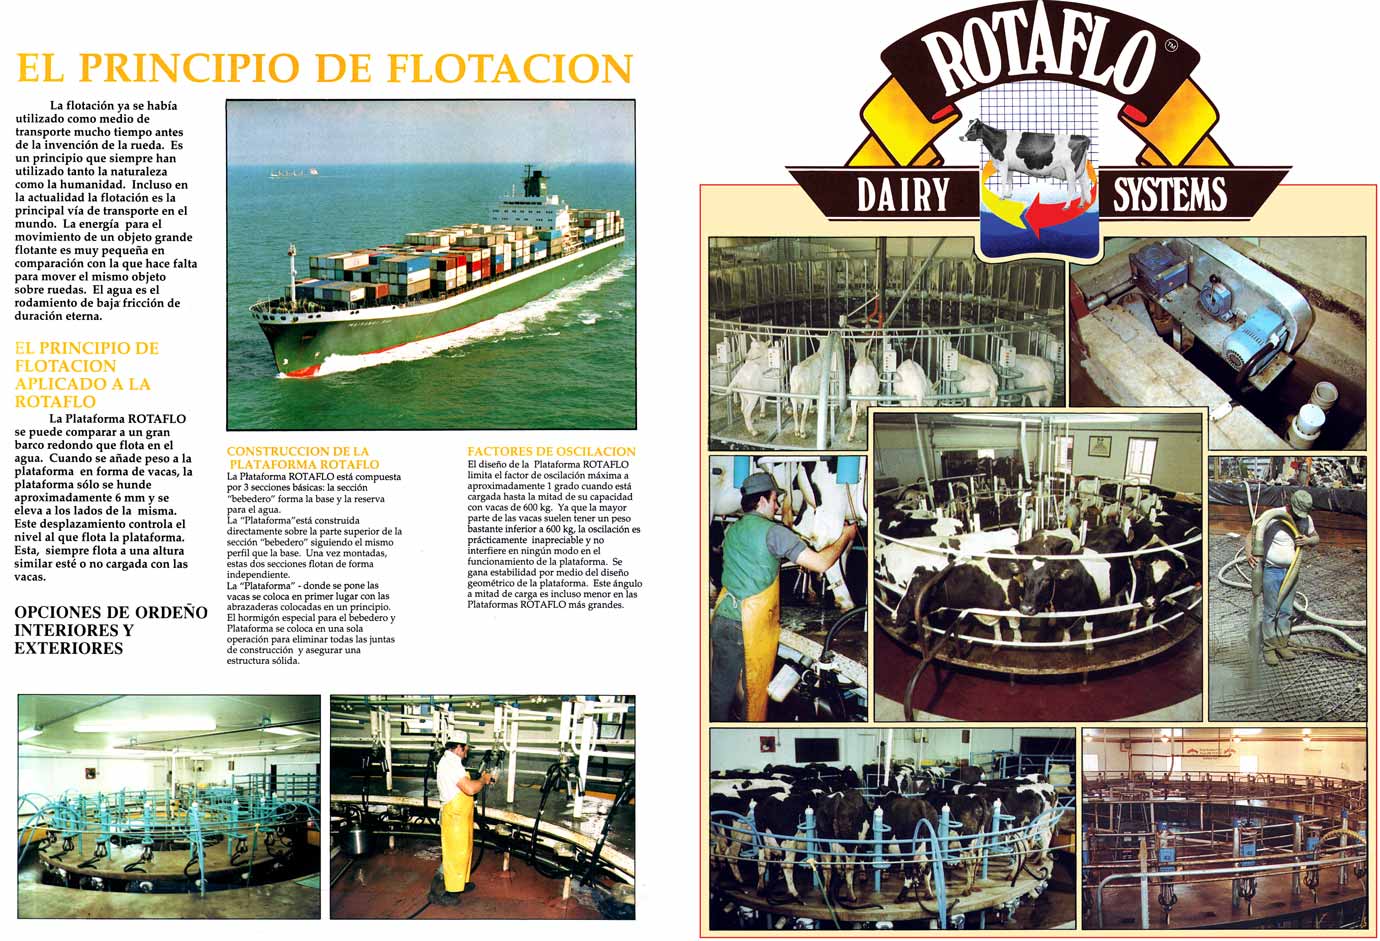 Rotaflo Basement Rotary Spanish